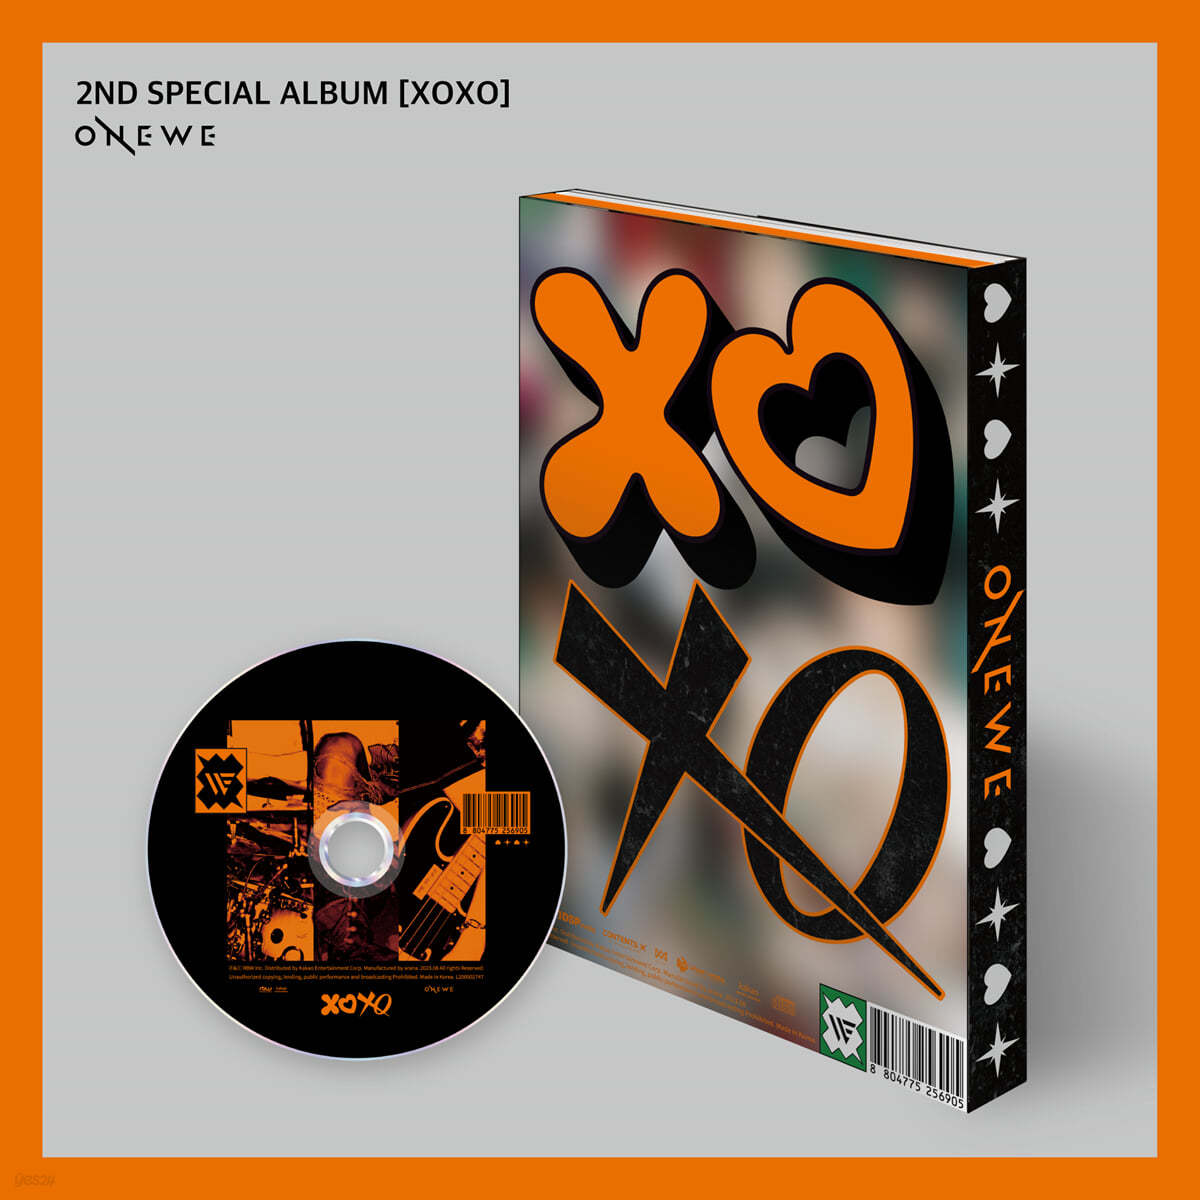 원위 (ONEWE) - 2ND SPECIAL ALBUM [XOXO]